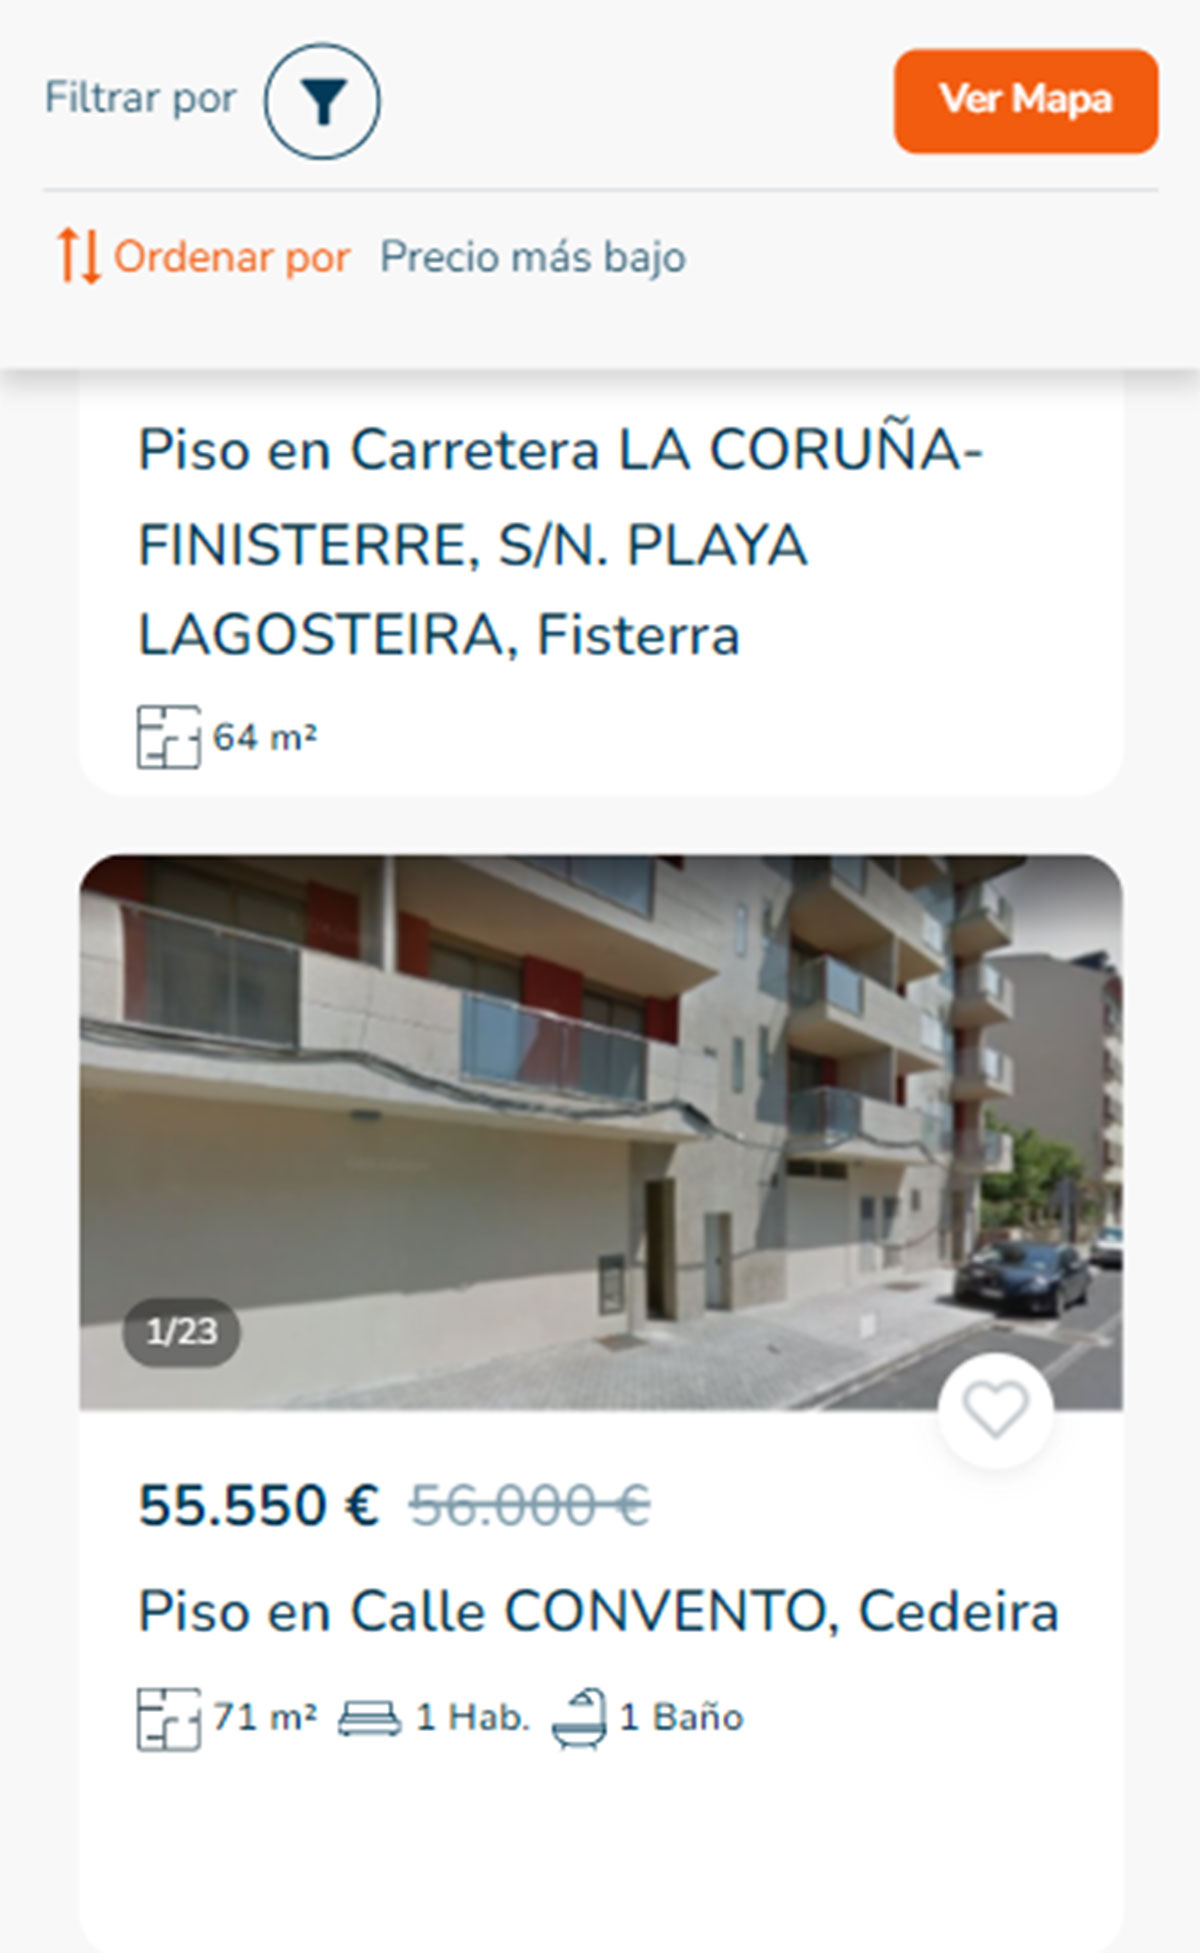 Piso a la venta en A Coruña por 55.000 euros